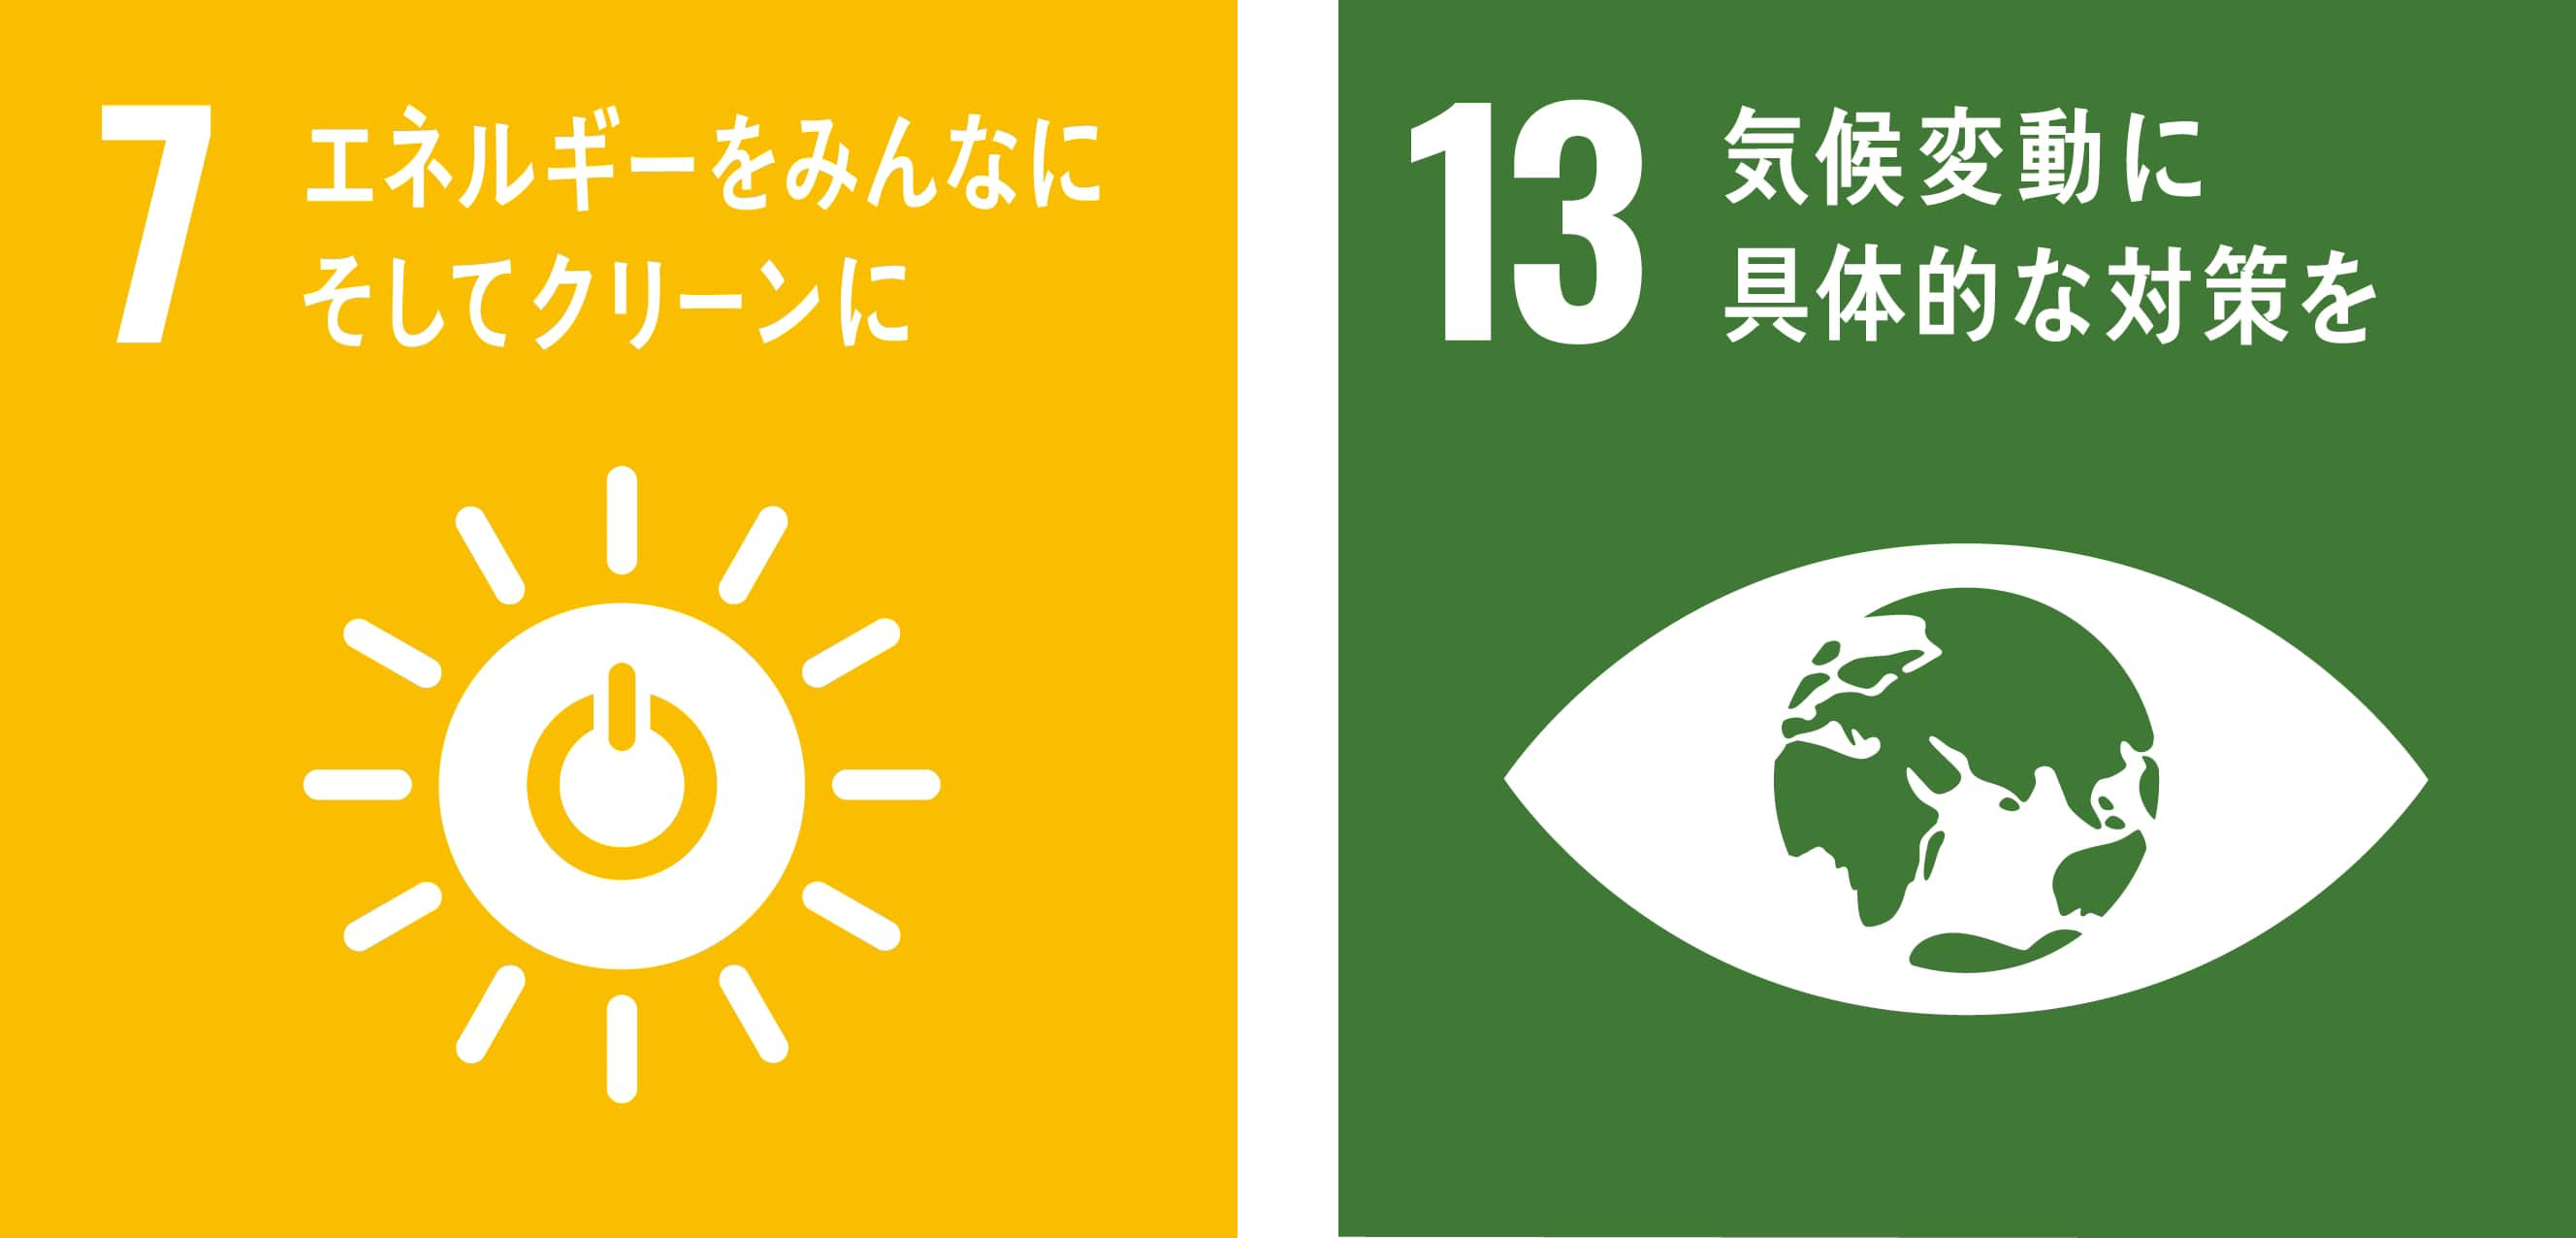 SDGs目標7_エネルギーをみんなにそしてクリーンに・SDGs目標13_気候変動に具体的な対策を